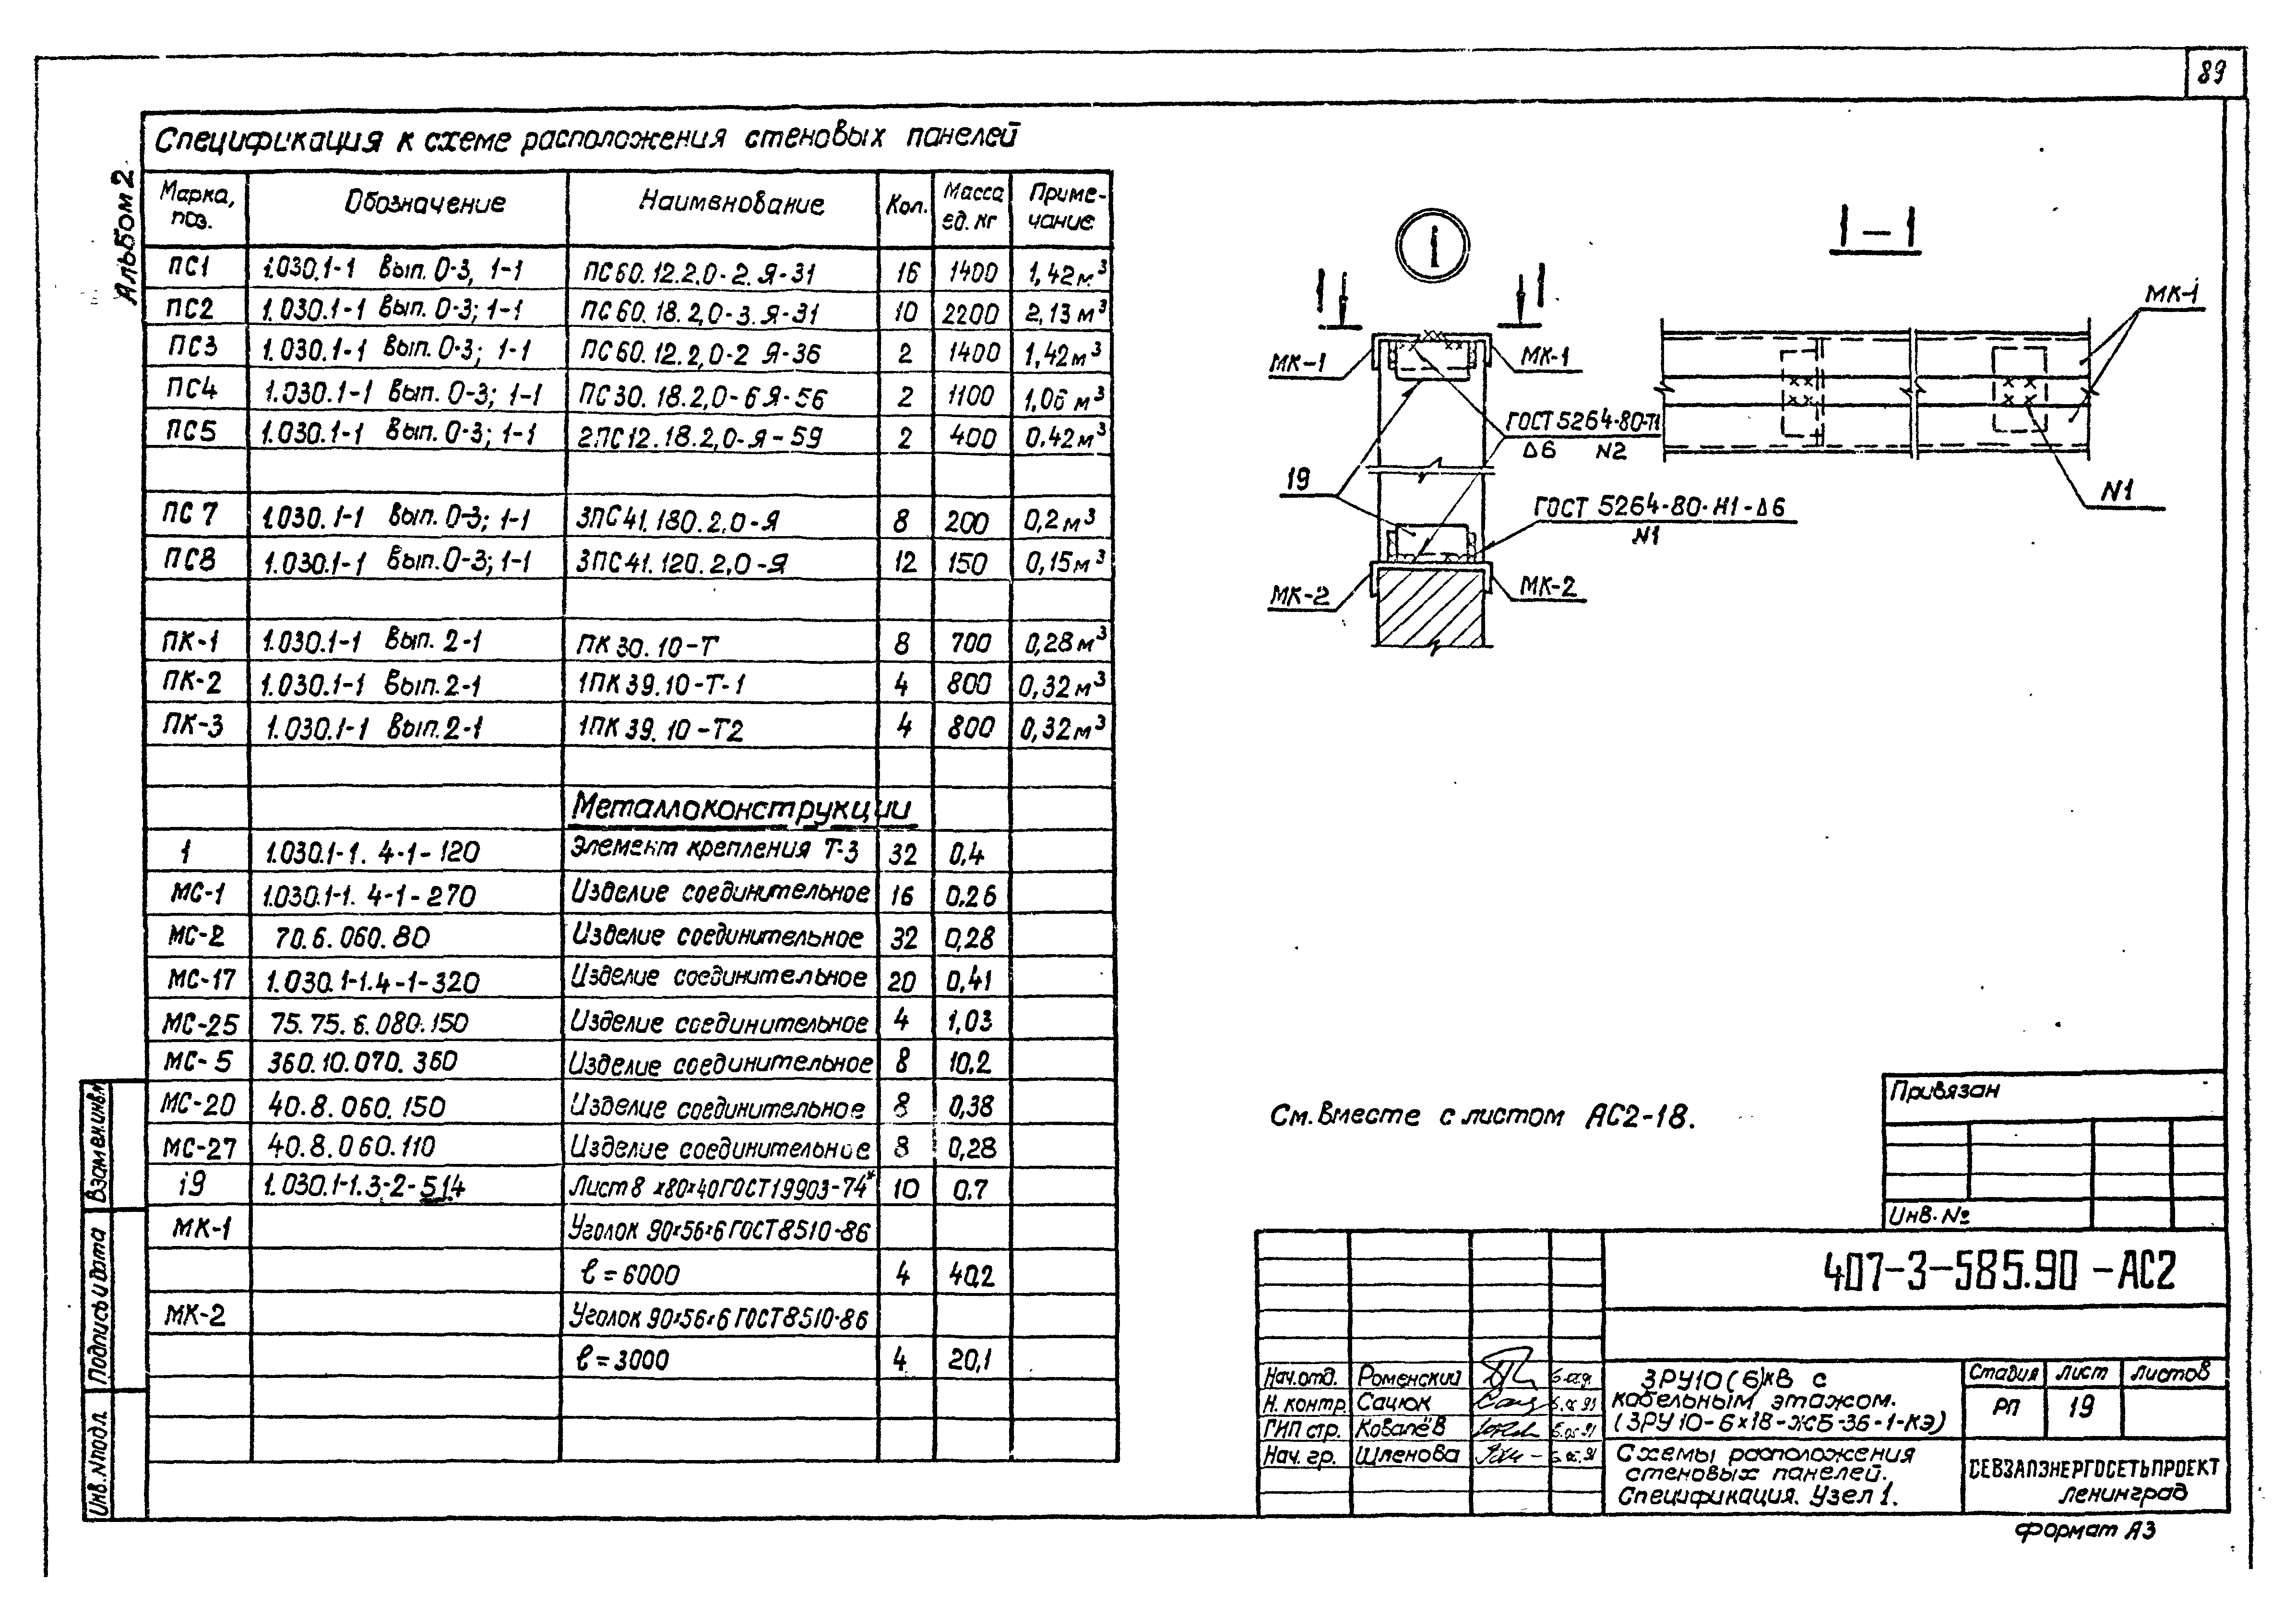 Типовой проект 407-3-585.90